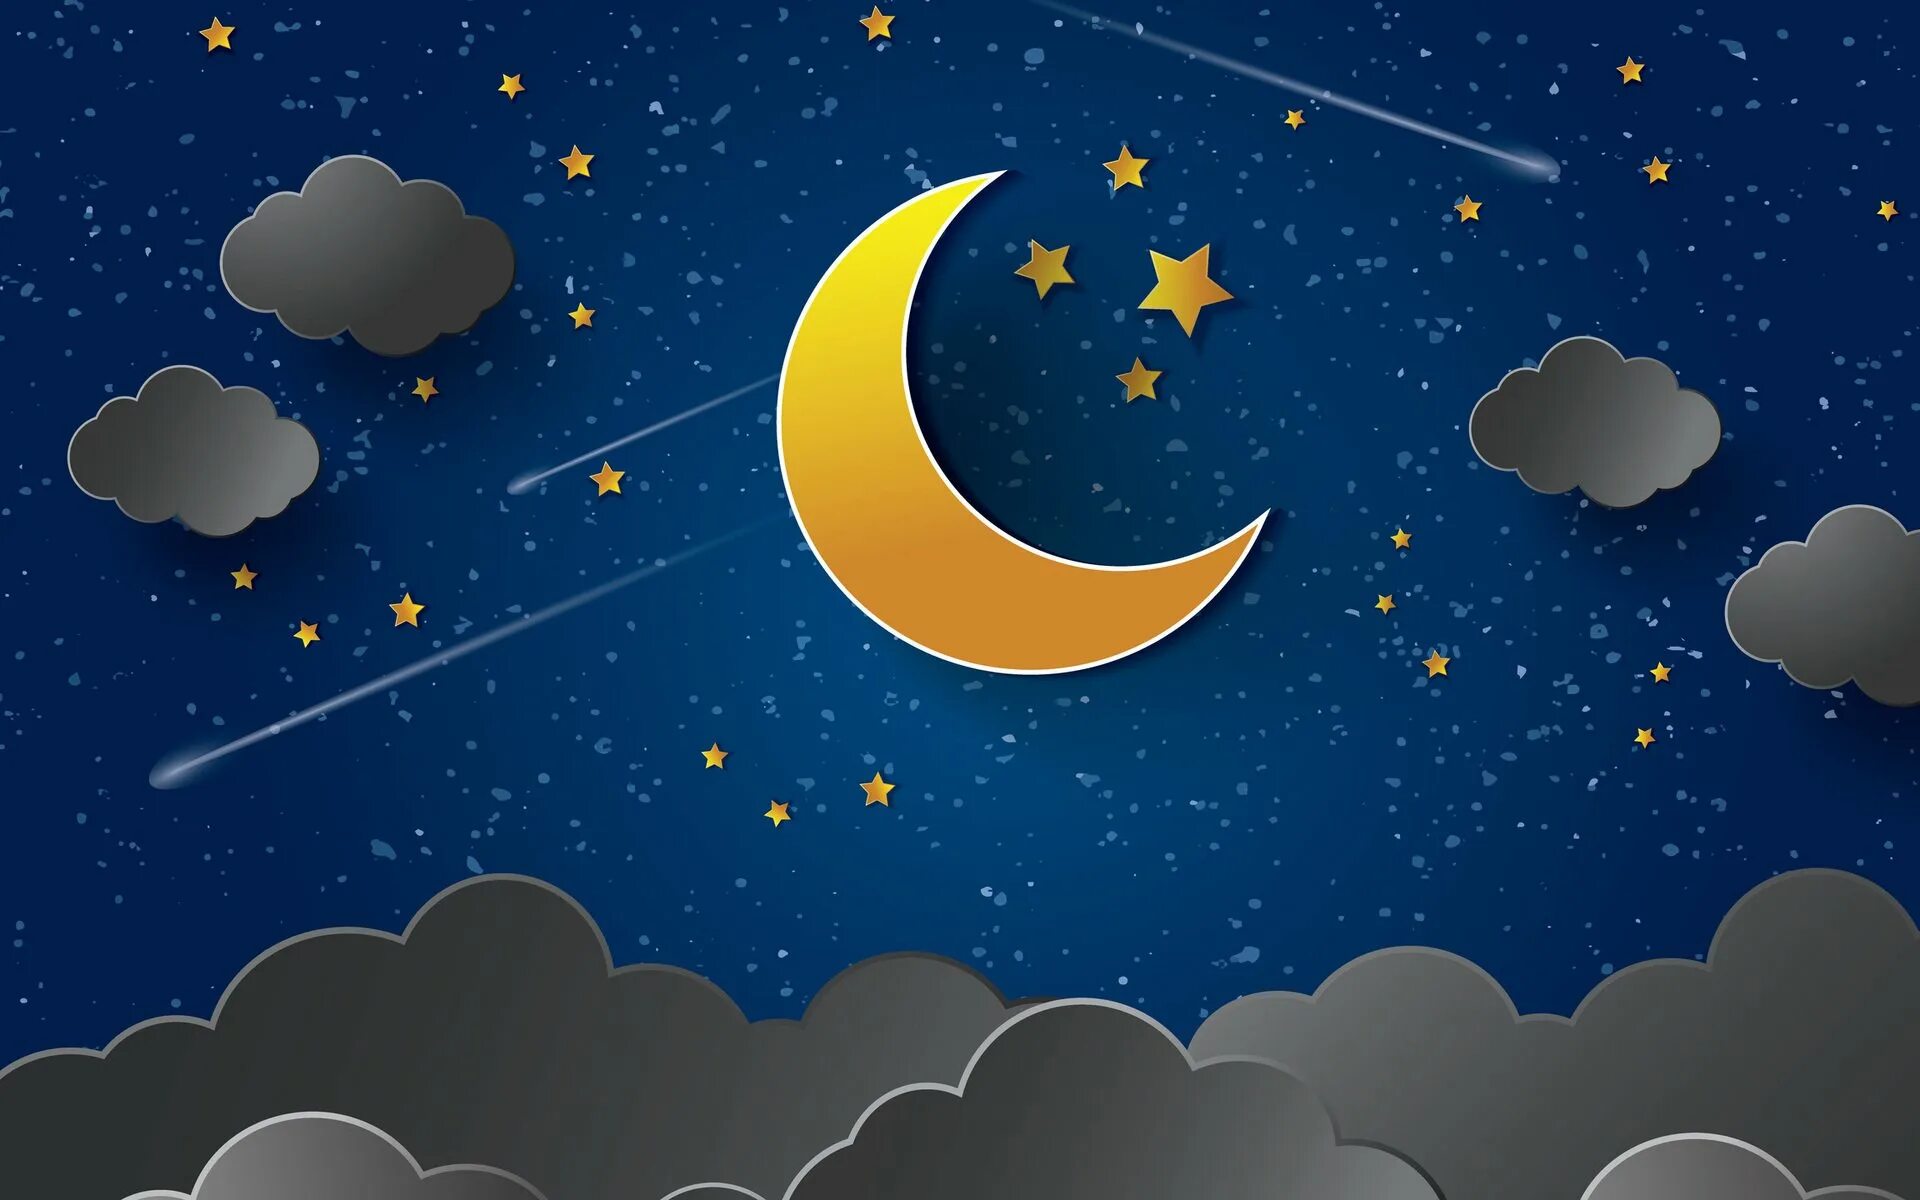 Окр мир ночью. Луна и звезды. Месяц и звезды. Звездное небо с луной. Ночь месяц.